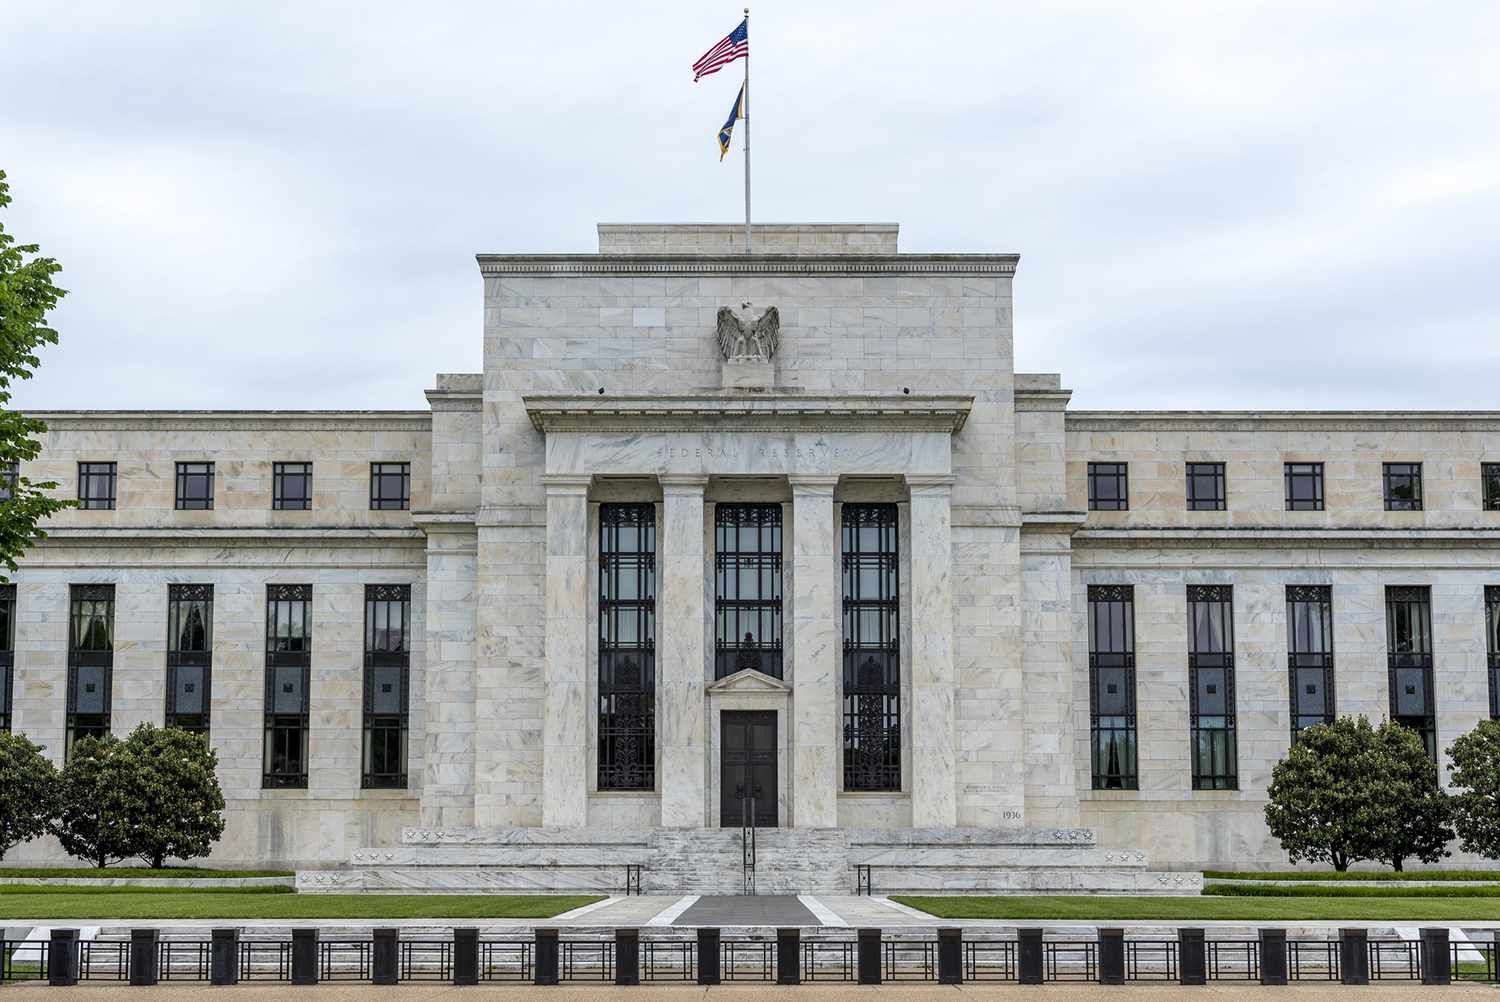 لماذا سيكون محضر الفيدرالي هام جداً؟ وما علاقته بالأزمة المالية العالمية 2008؟